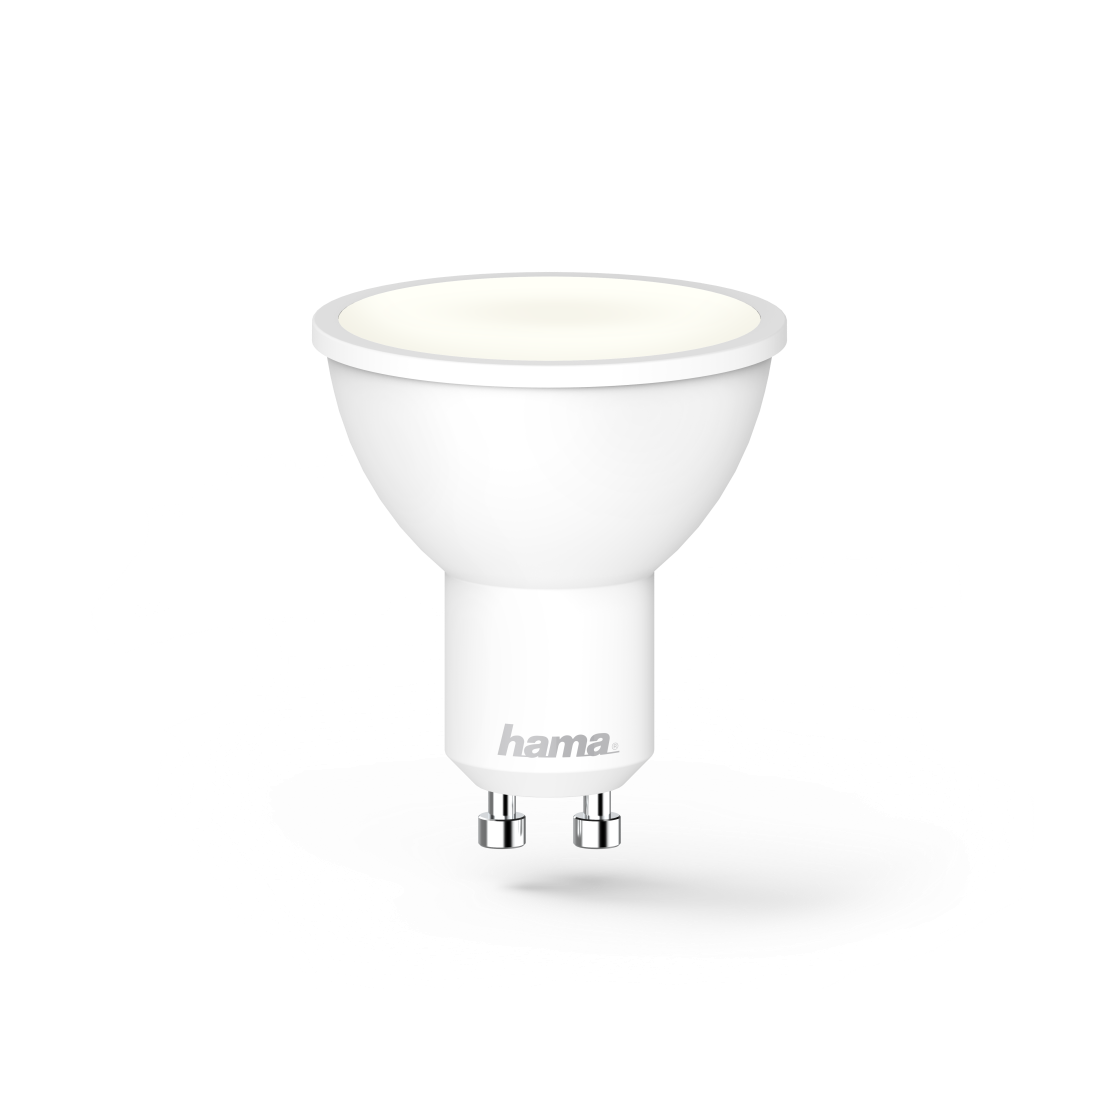 Hama WLAN-LED-Lampe, GU10, 5,5W, dimmbar, Refl., für Sprach-/App-Steuerung, Weiß